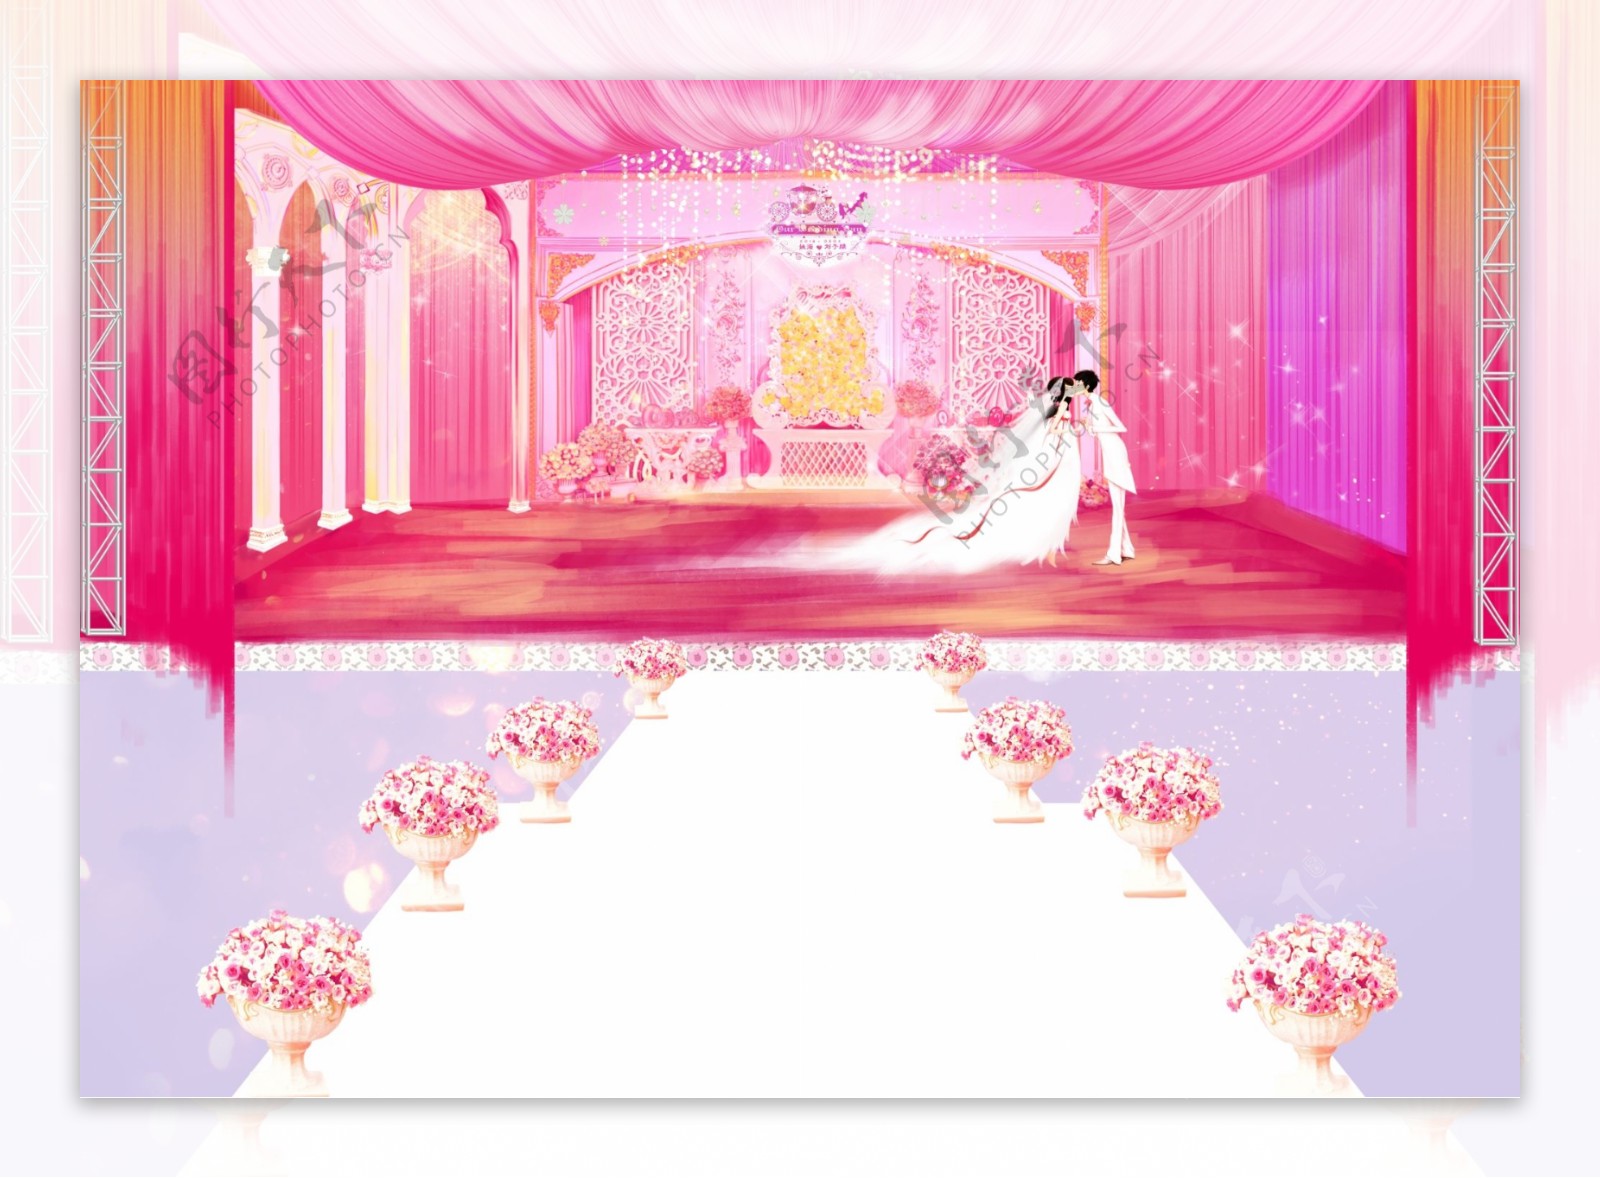 粉红色浪漫婚庆场景手绘设计